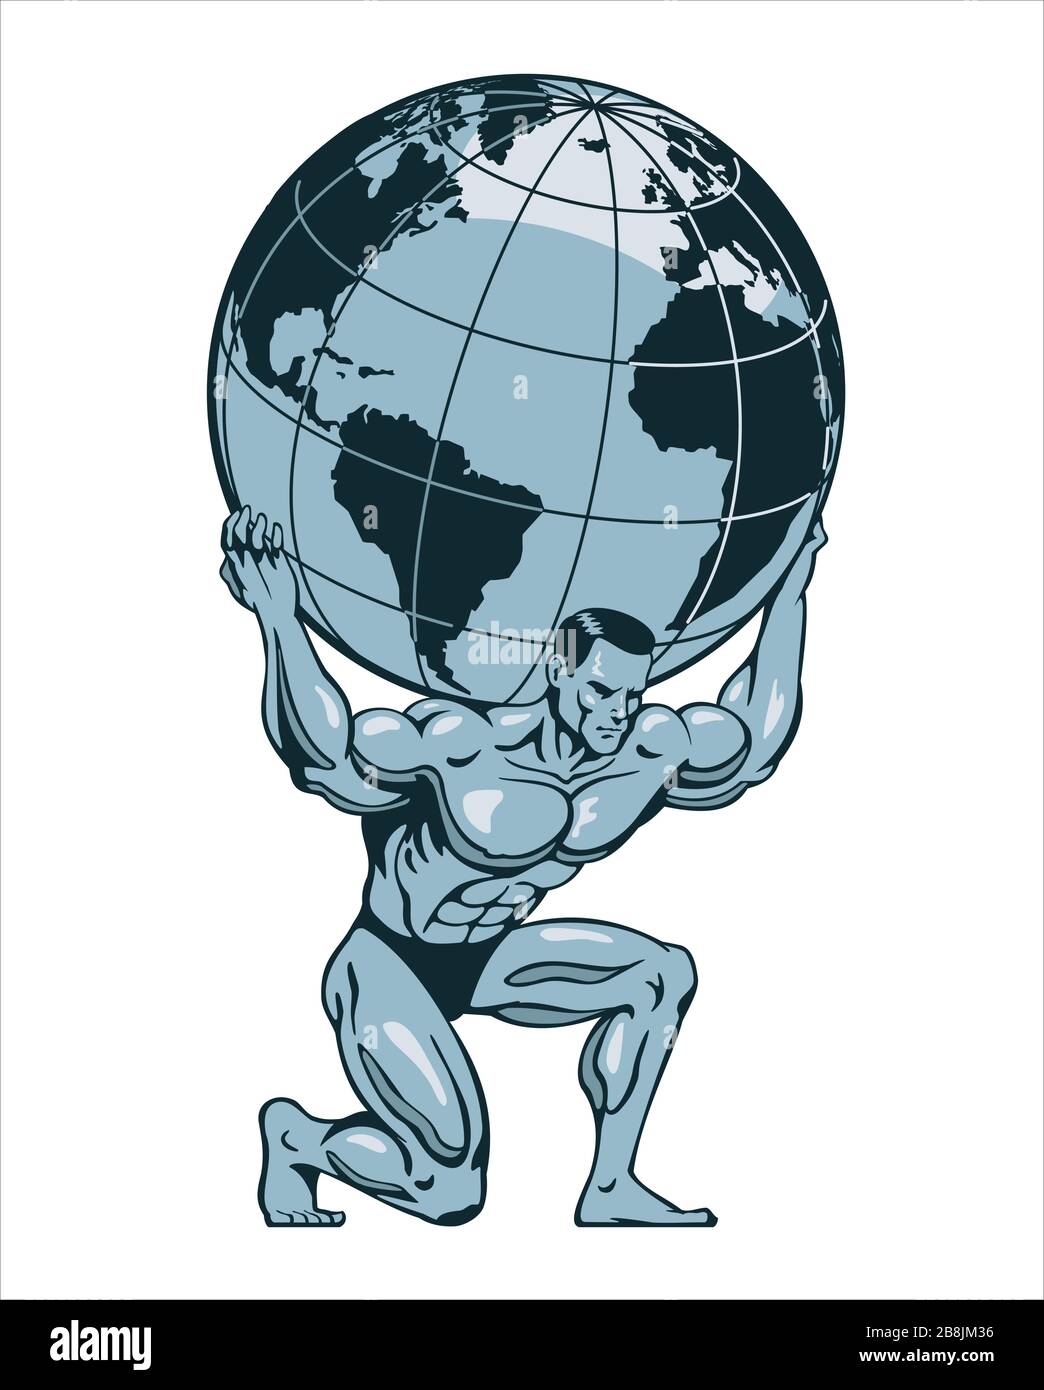 Atlas oder Titan kniend, der die Erdkugel auf dem Rücken hochhebt. Bodybuilder. Stilisierte Vektorgrafiken. Stock Vektor